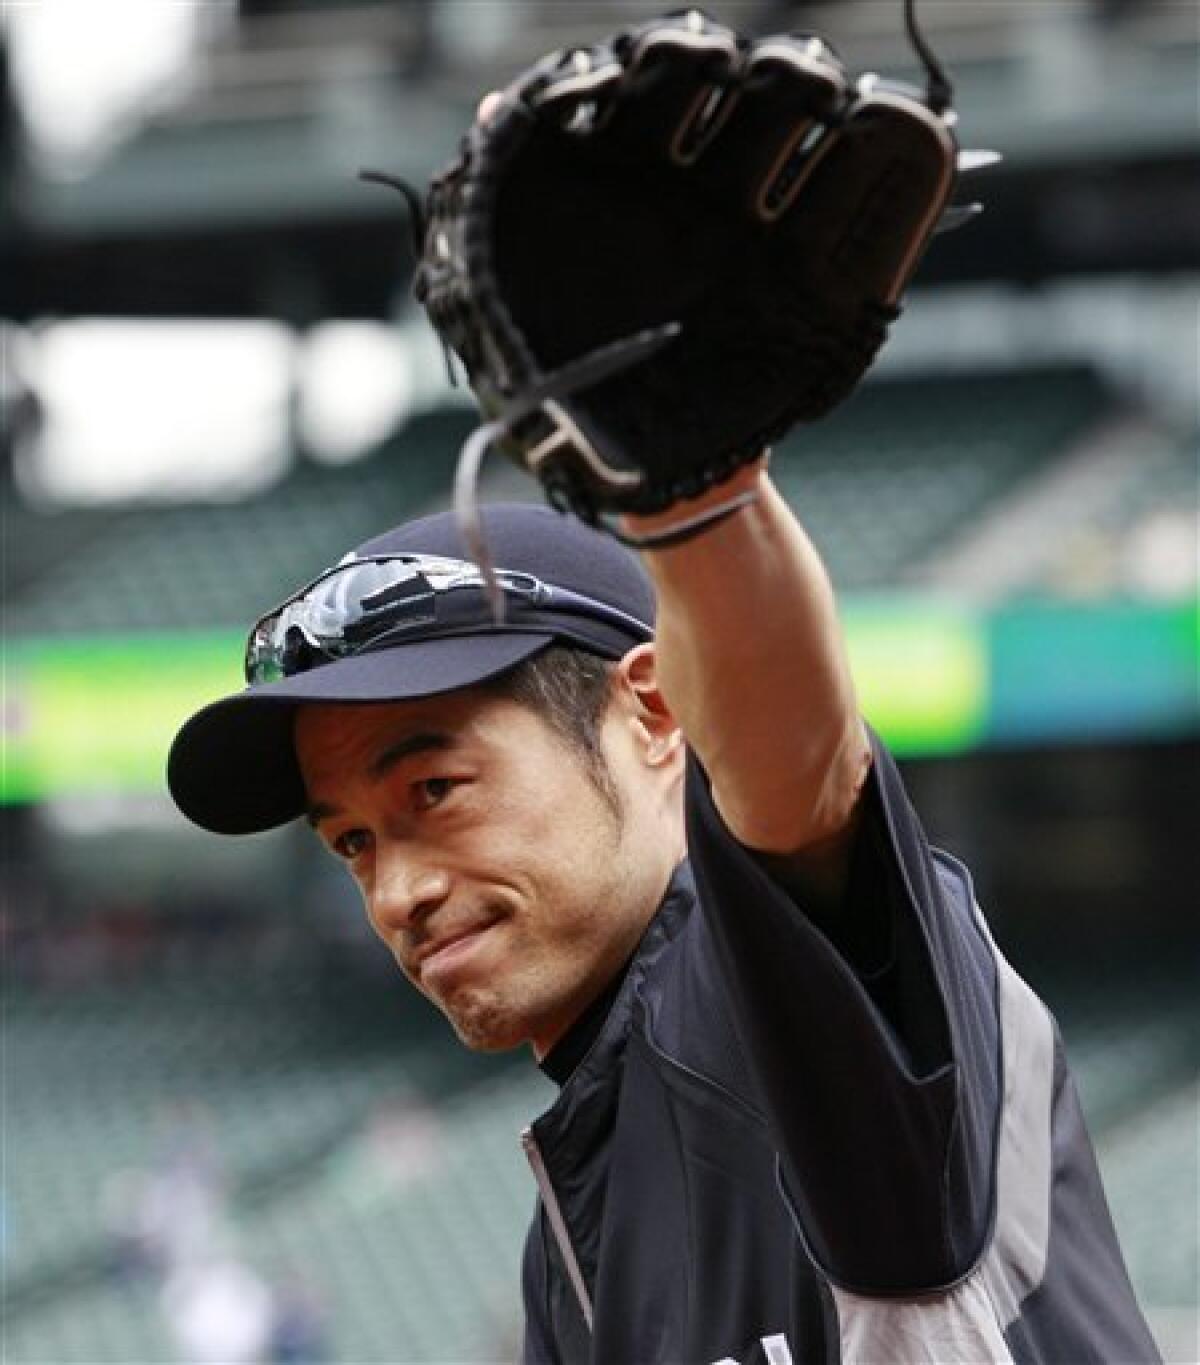 Ichiro Suzuki Returns to the Mariners With Nothing to Prove - The New York  Times